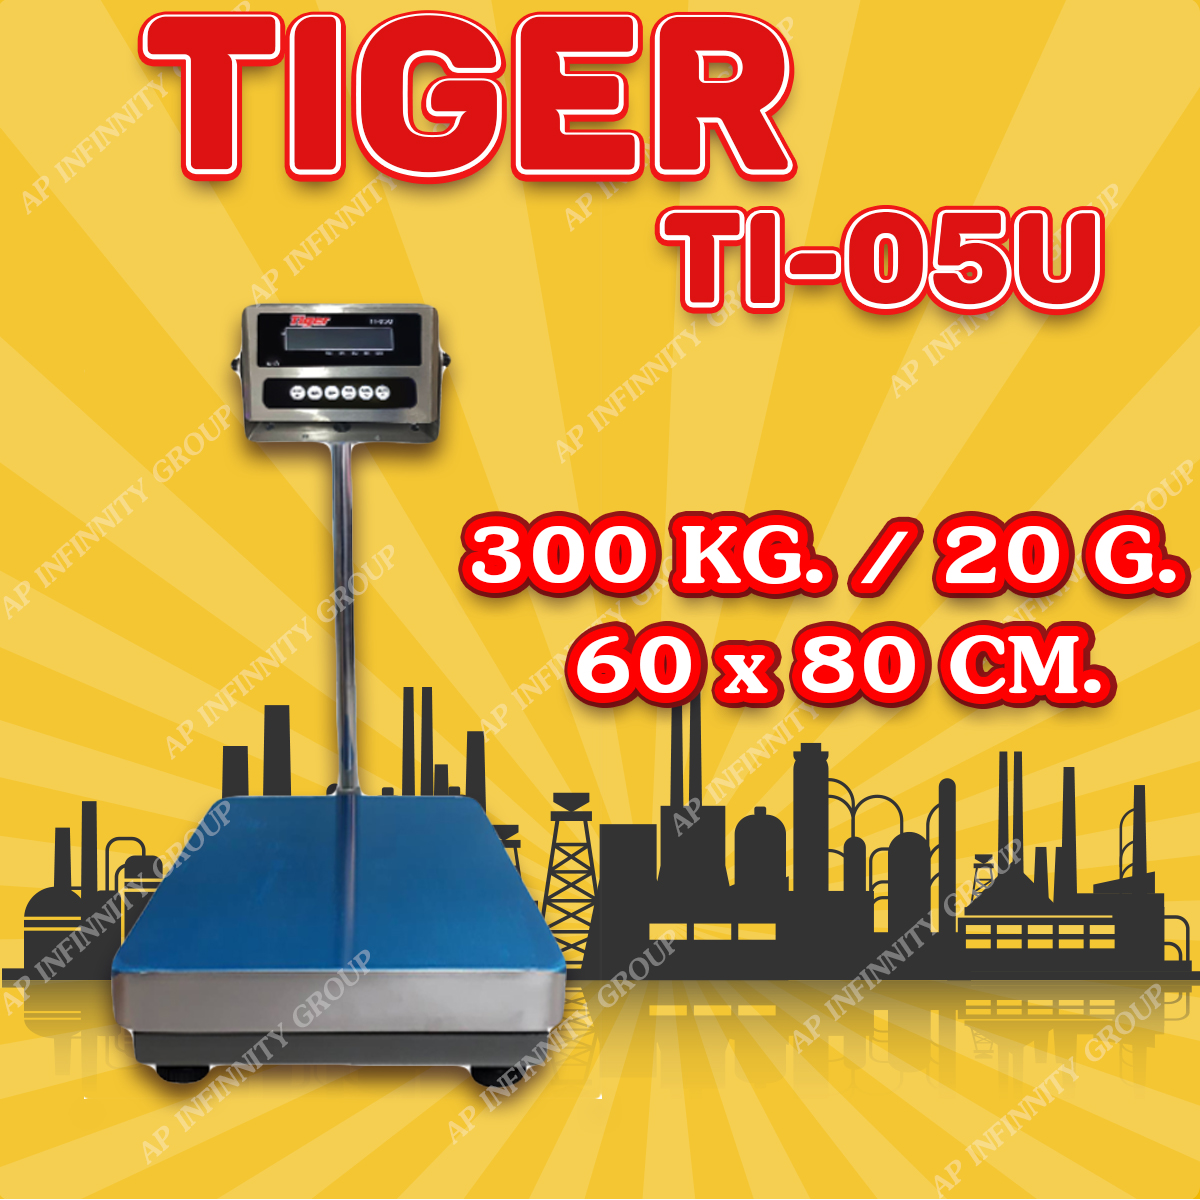 ตาชั่งดิจิตอล เครื่องชั่งดิจิตอล เครื่องชั่งตั้งพื้น 300kg ความละเอียด 20g ยี่ห้อ Tiger รุ่น TI–05U แท่นชั่งขนาดฐาน 60x 80cm มีช่อง USB สำหรับการบันทึกข้อมูลได้ รูปที่ 1